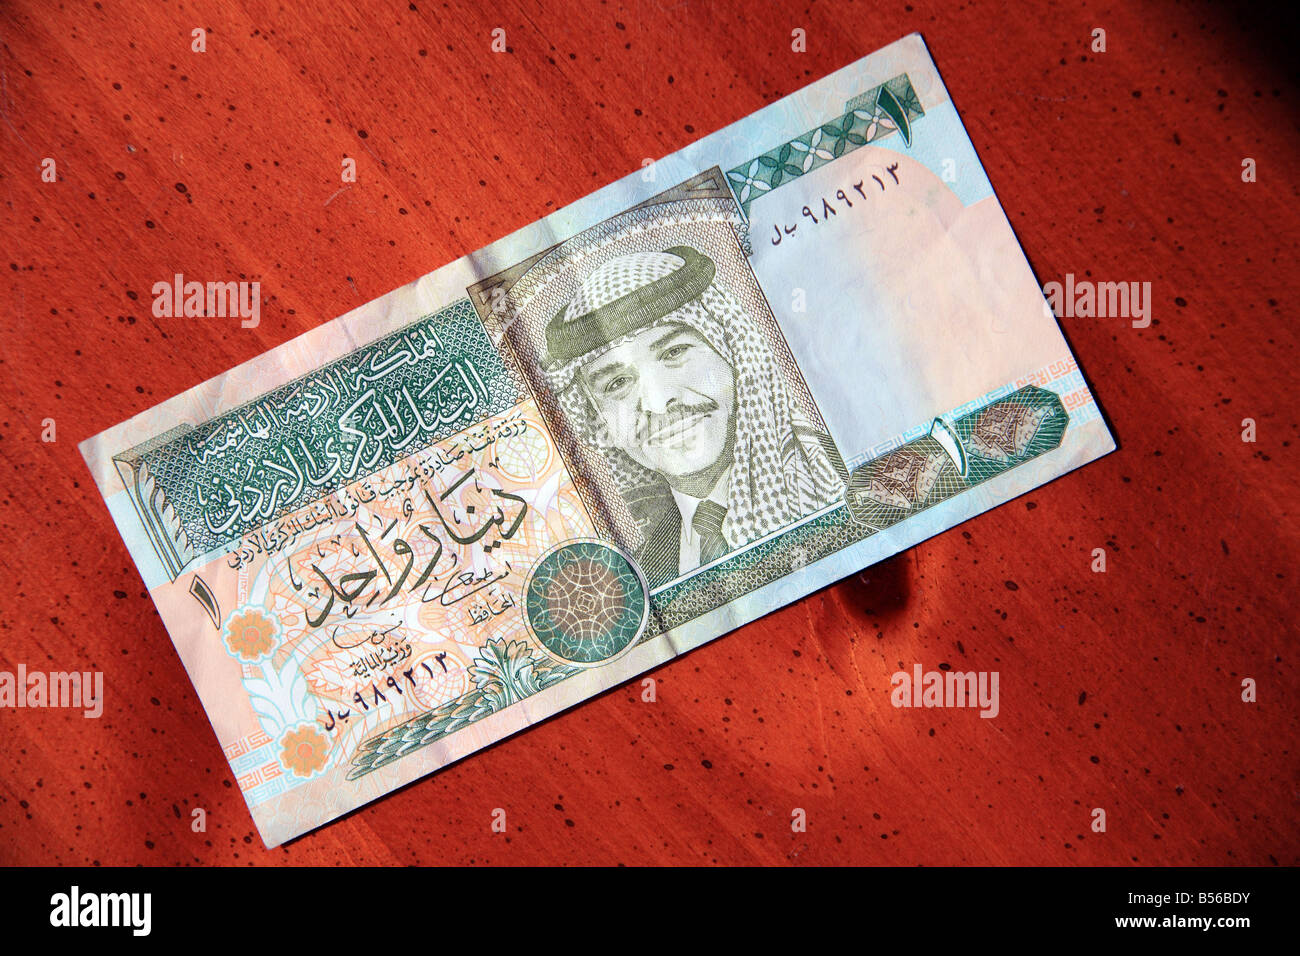 Une monnaie dinar jordanien remarque sur la table Banque D'Images